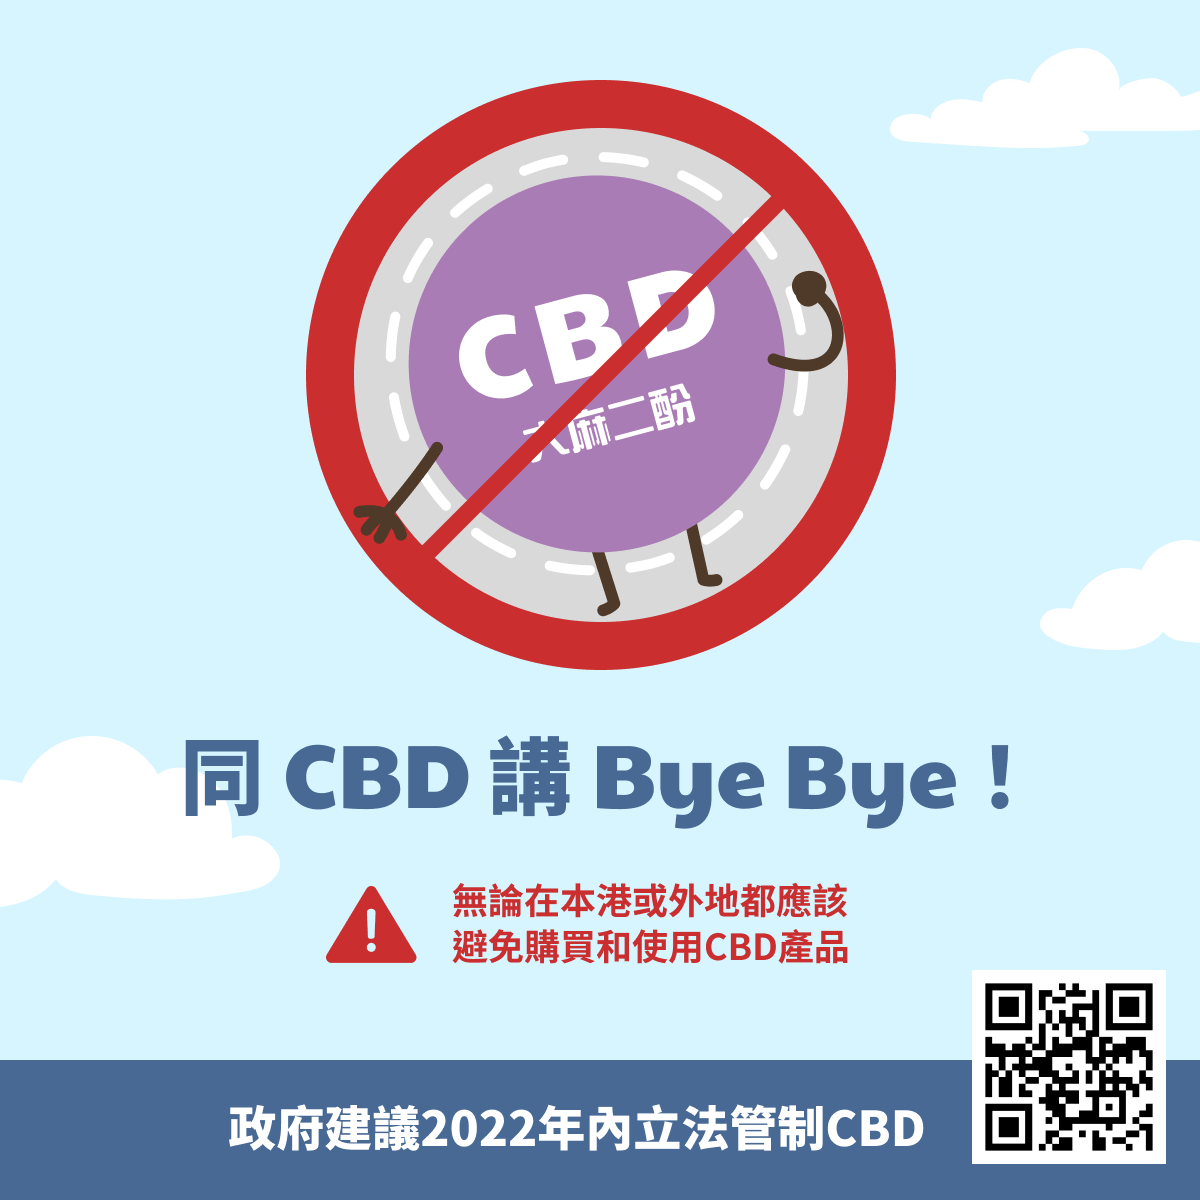 同CBD講Bye Bye!